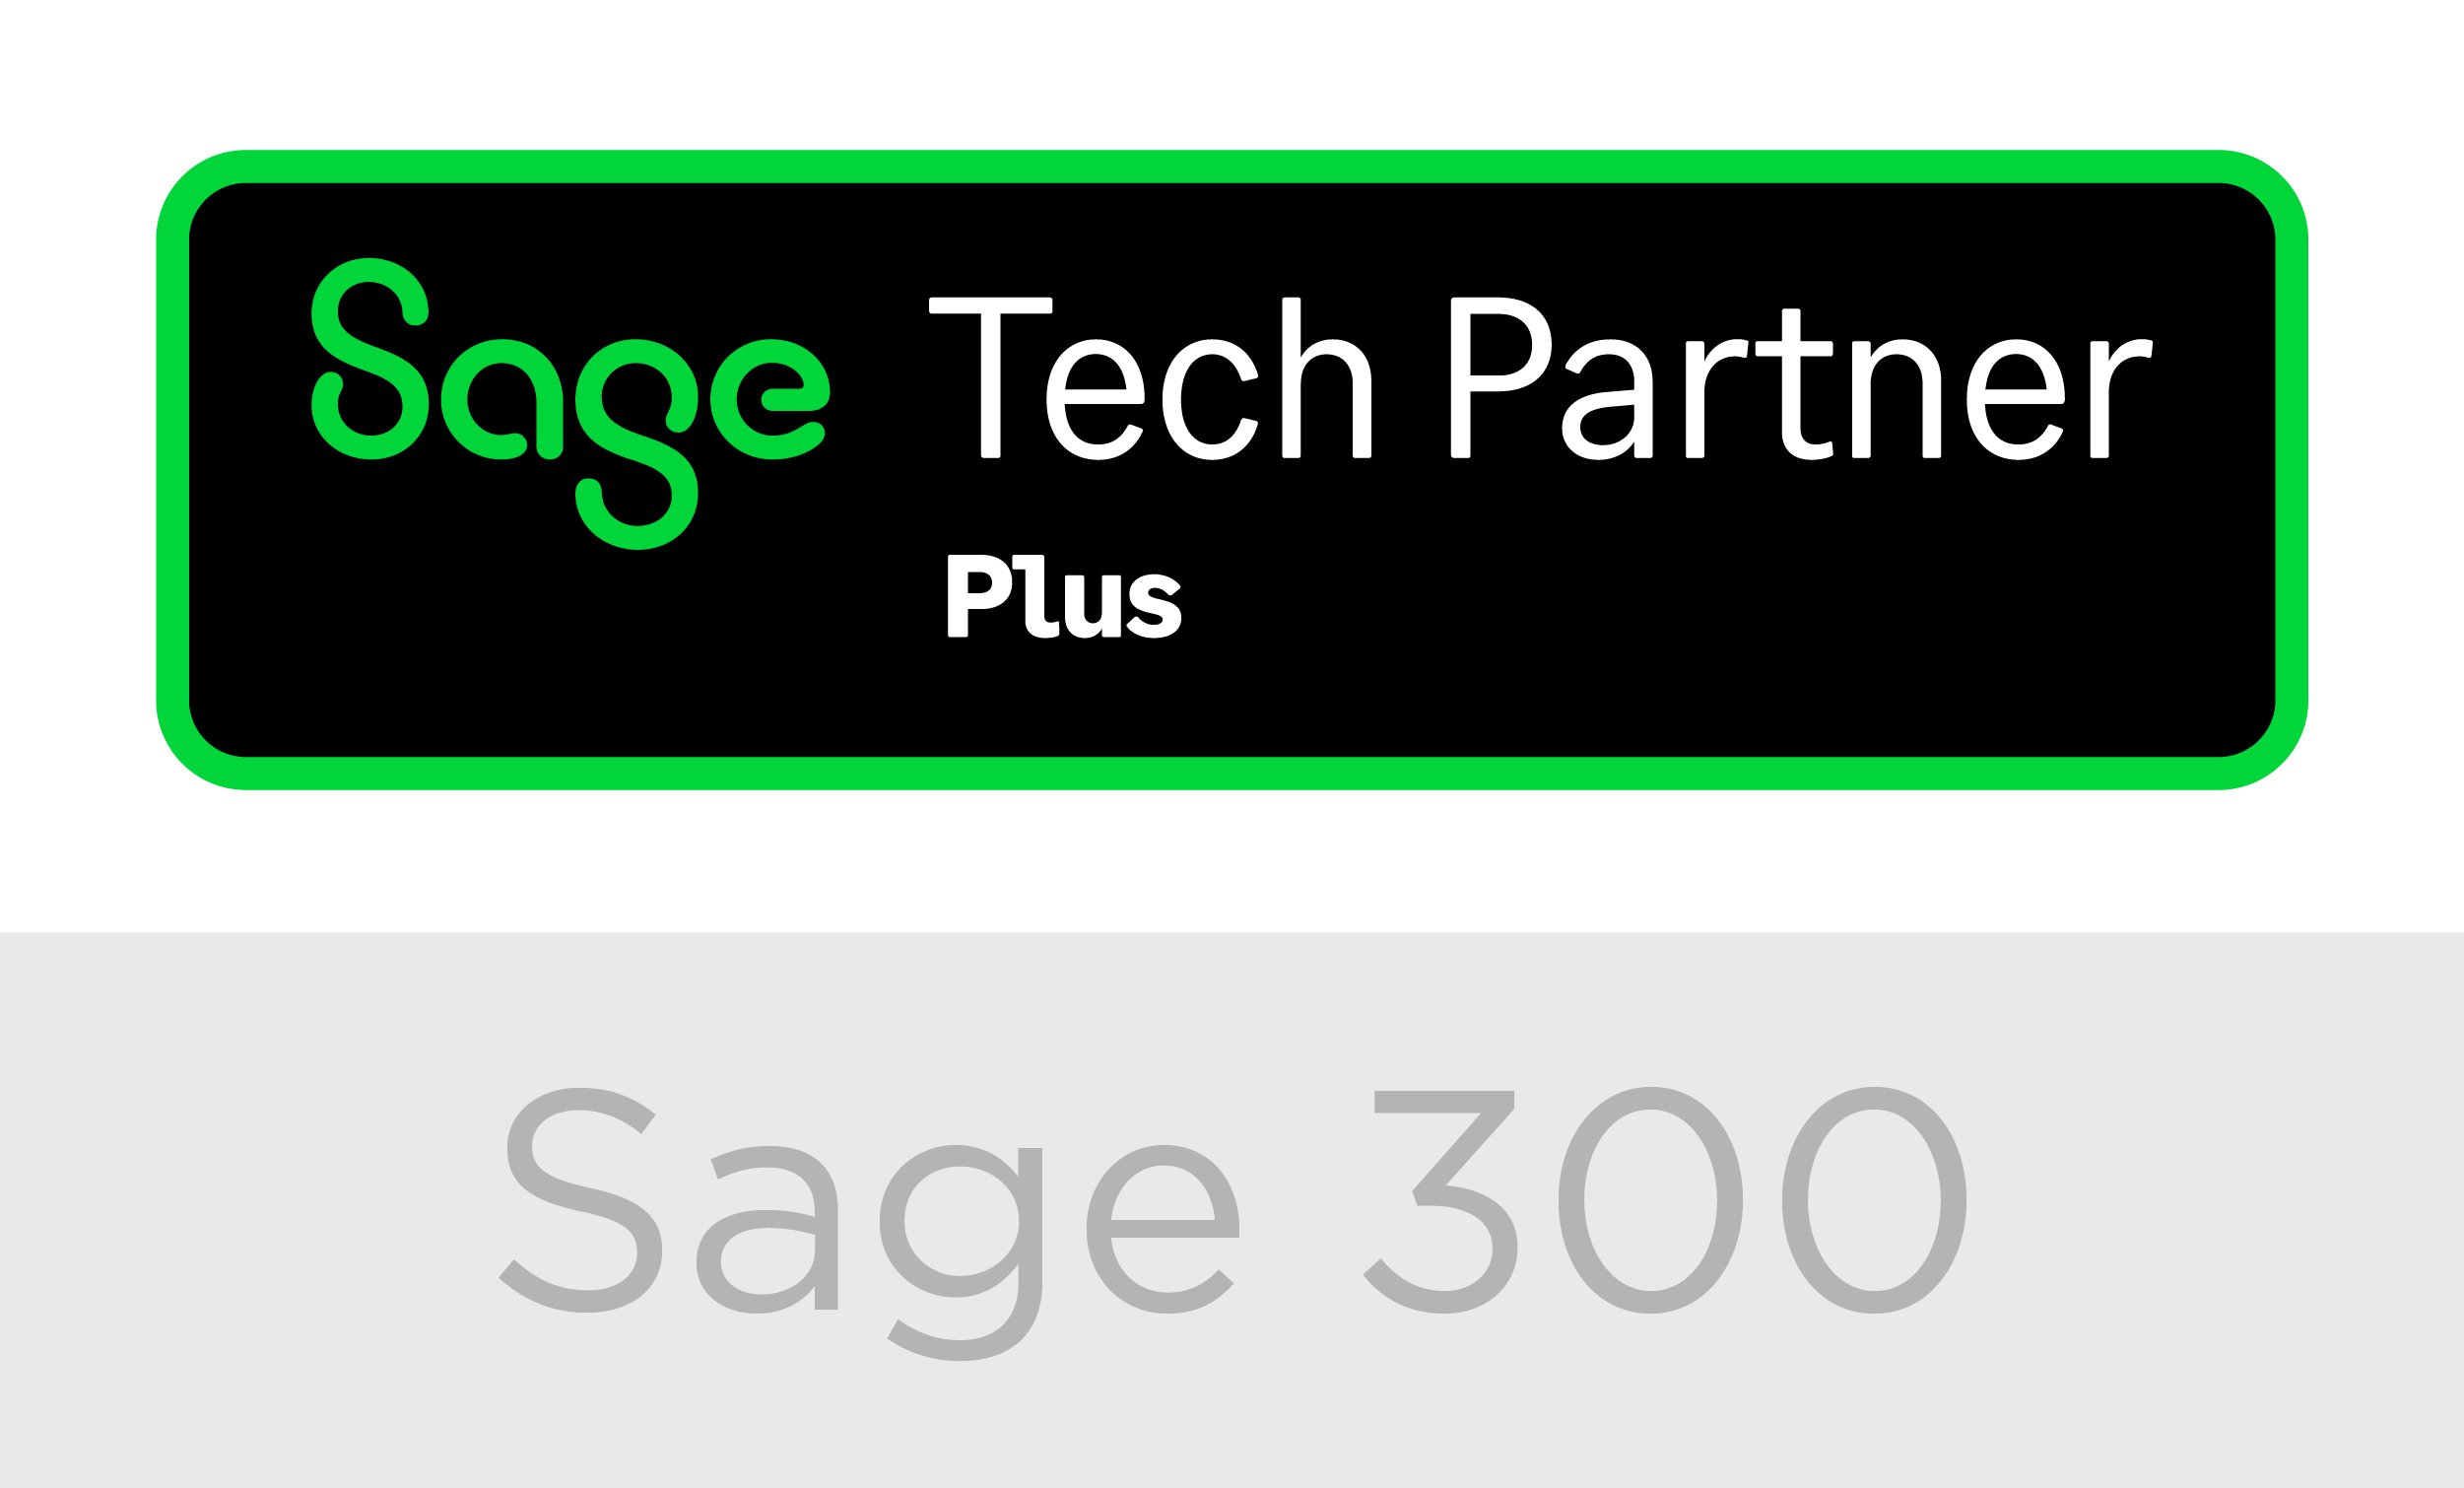 Sage 300 Logo